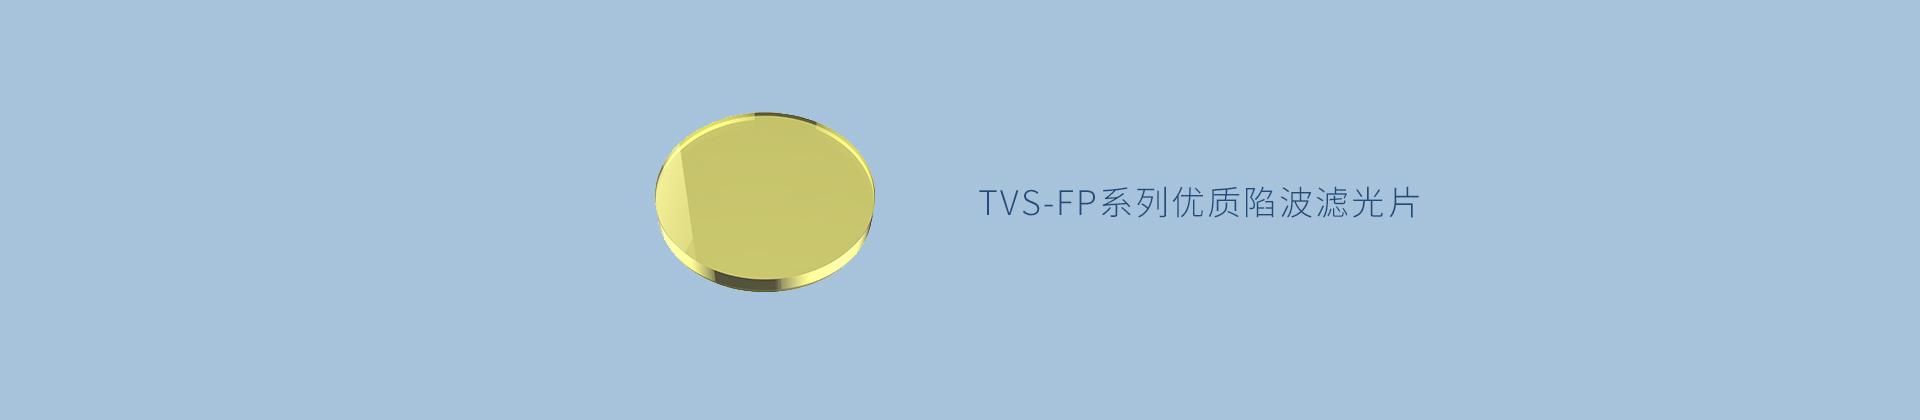 TVS-FP系列优质陷波滤光片